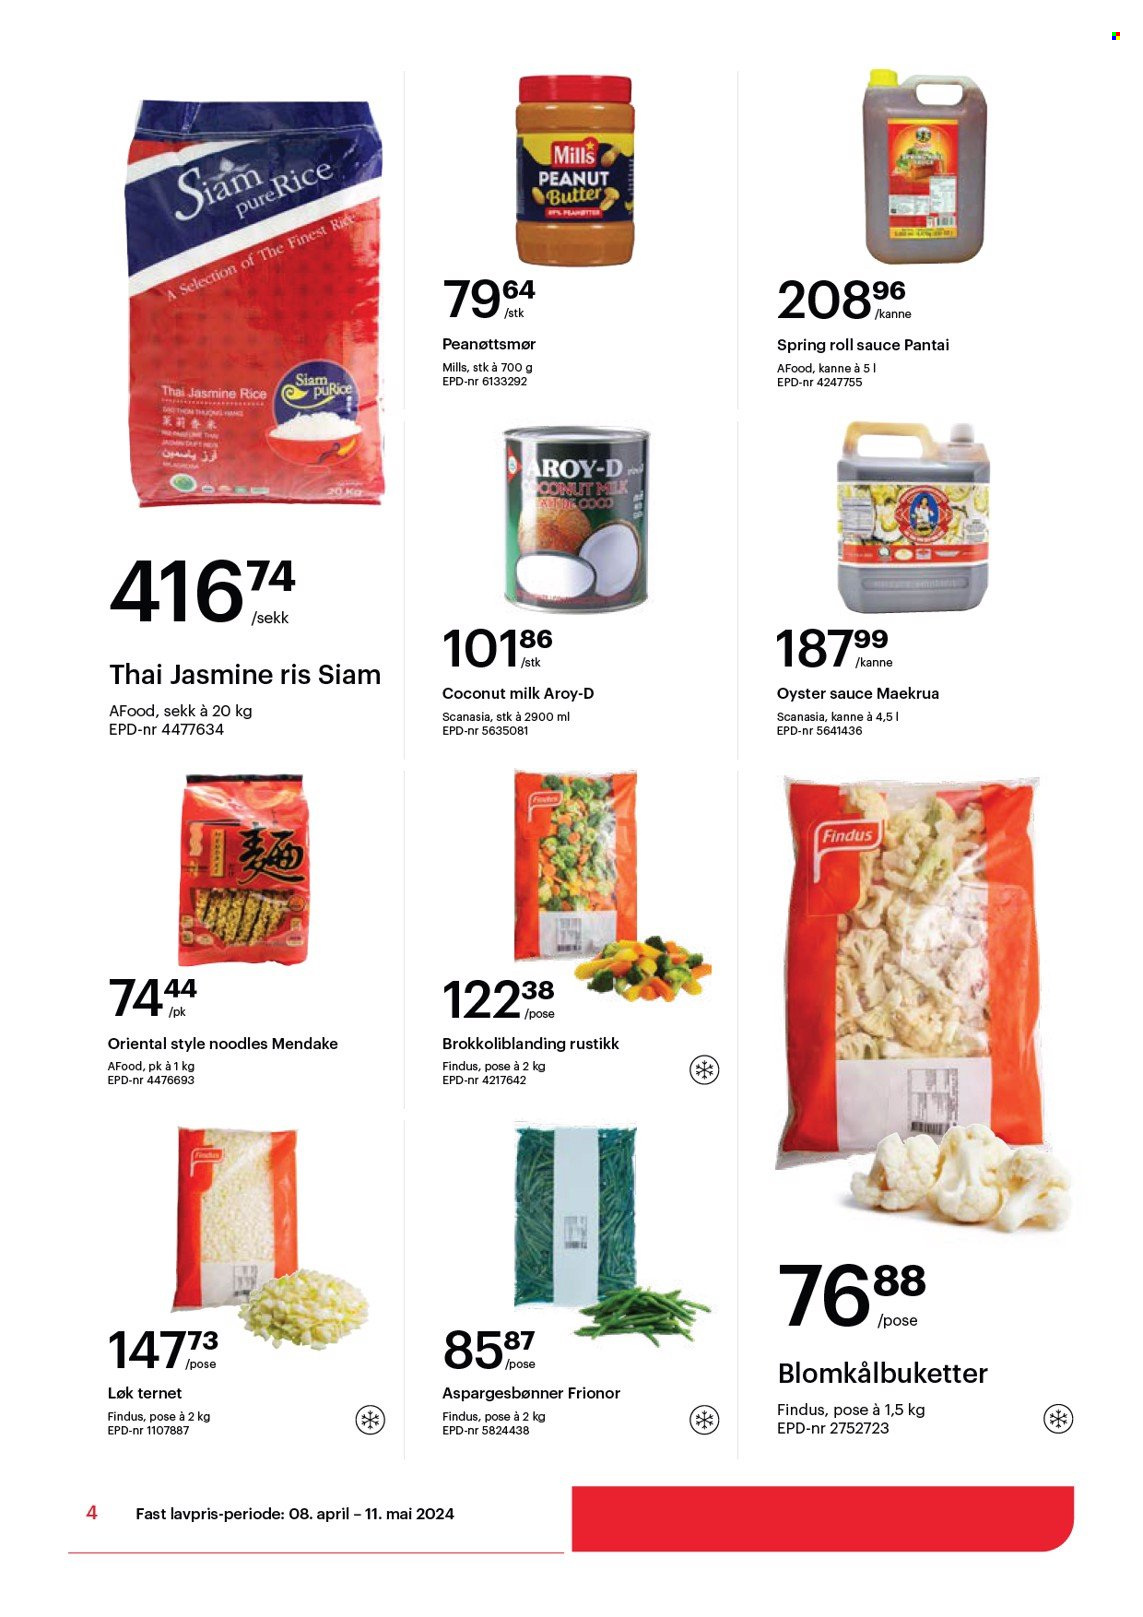 thumbnail - Kundeavis Storcash - 8.4.2024 - 11.5.2024 - Produkter fra tilbudsaviser - aspargesbønner, løk, Findus, frosne grønnsaker, ris, peanøttsmør. Side 4.